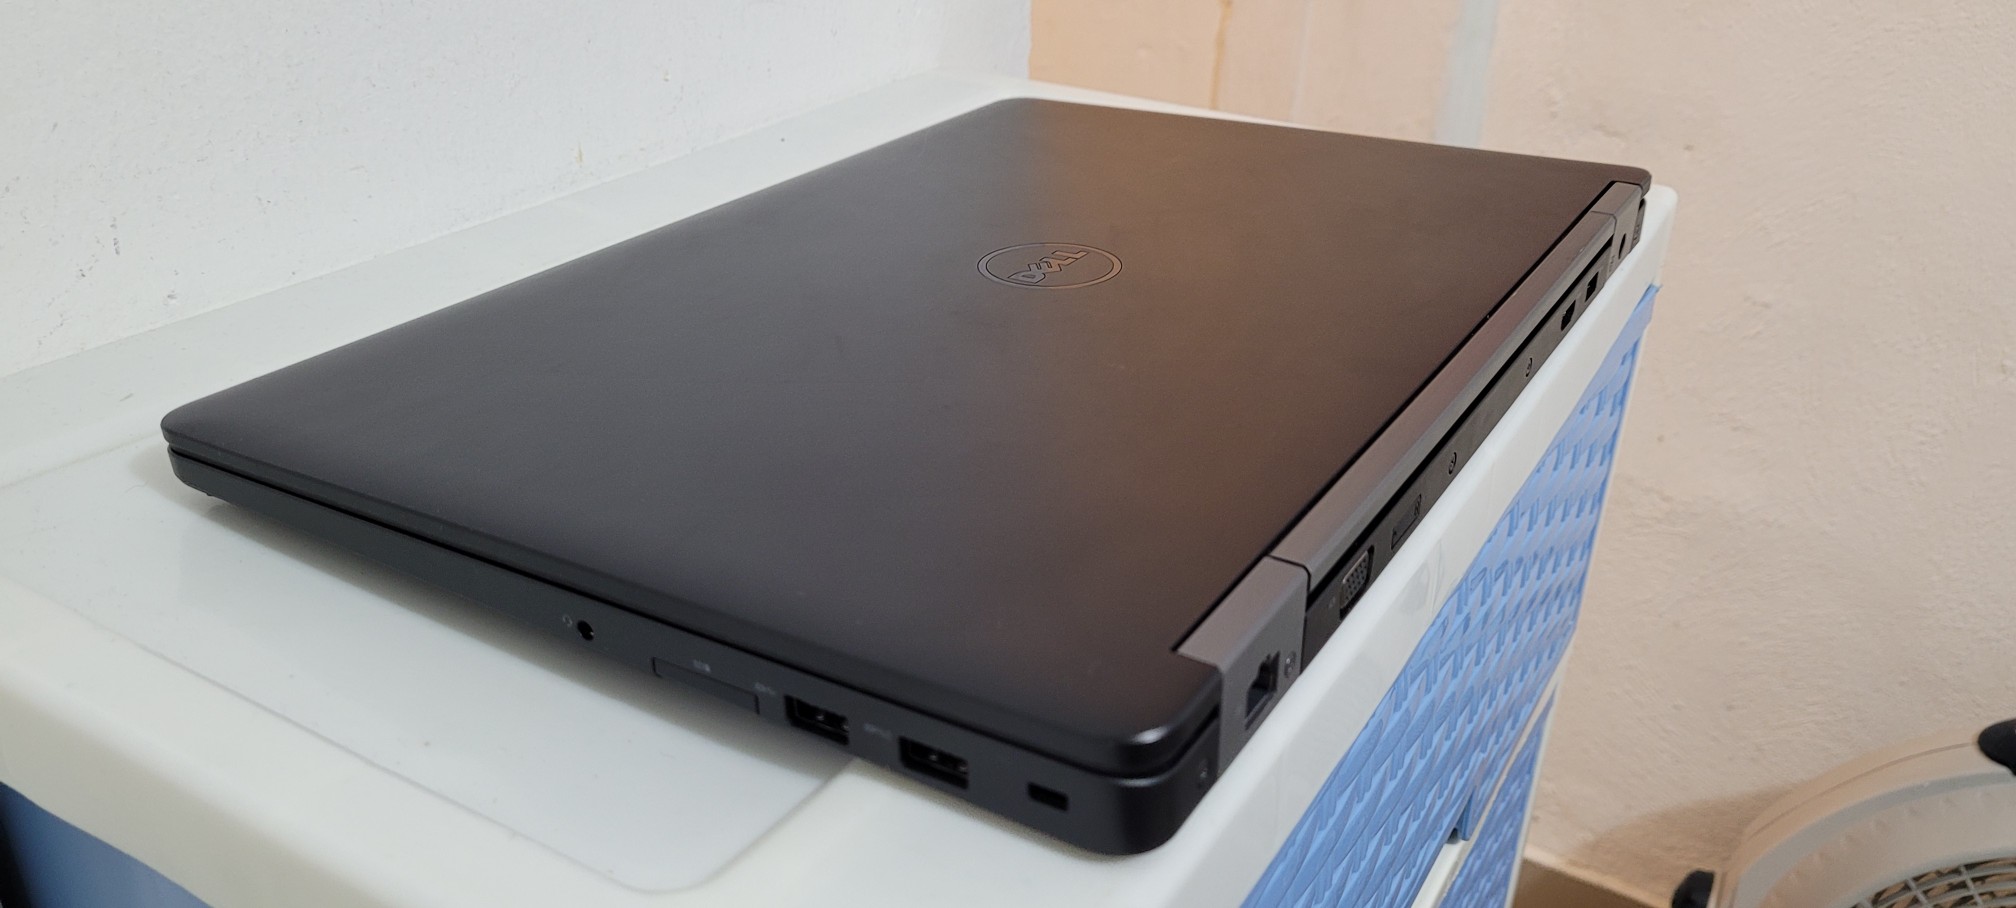 computadoras y laptops - Dell 5570 de 17 Pulg Core i5 6ta Ram 8gb ddr4 Disco 1000gb full 2